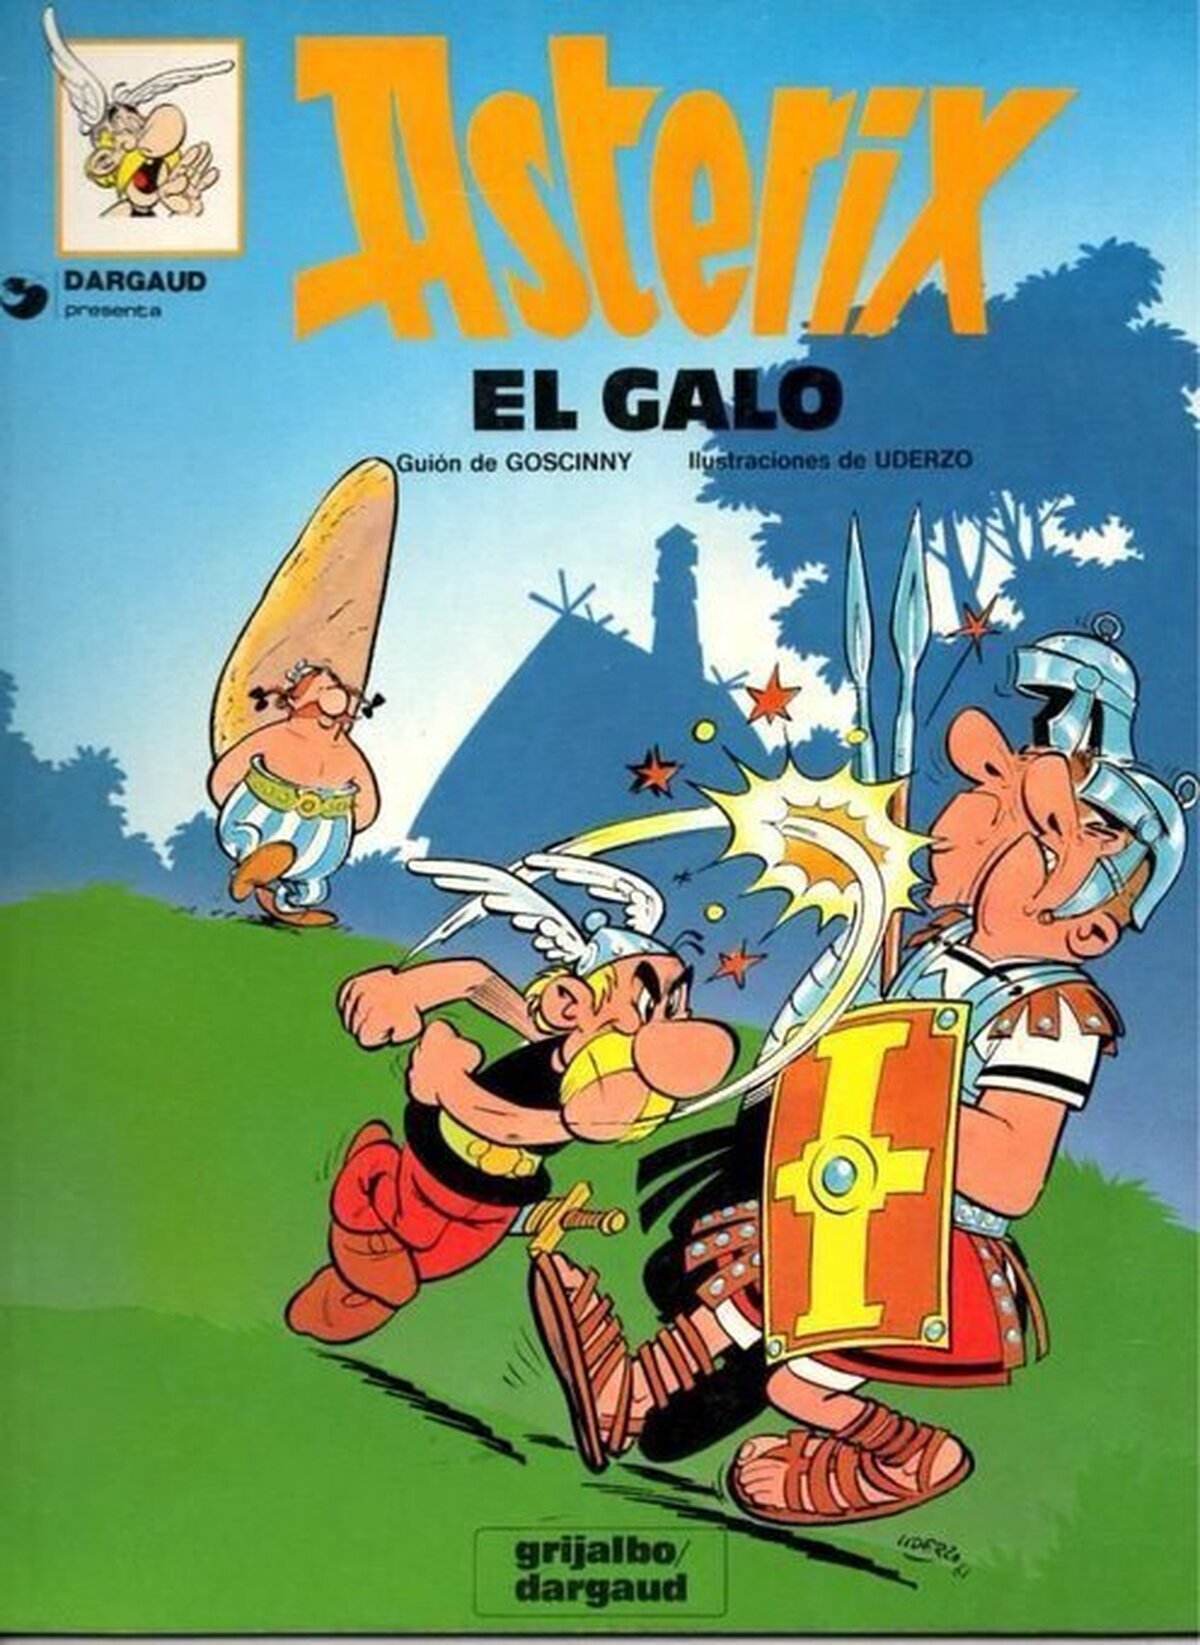 El primer cómic de Asterix se publicó un día como hoy en 1959 ¿Tenéis algún favorito?